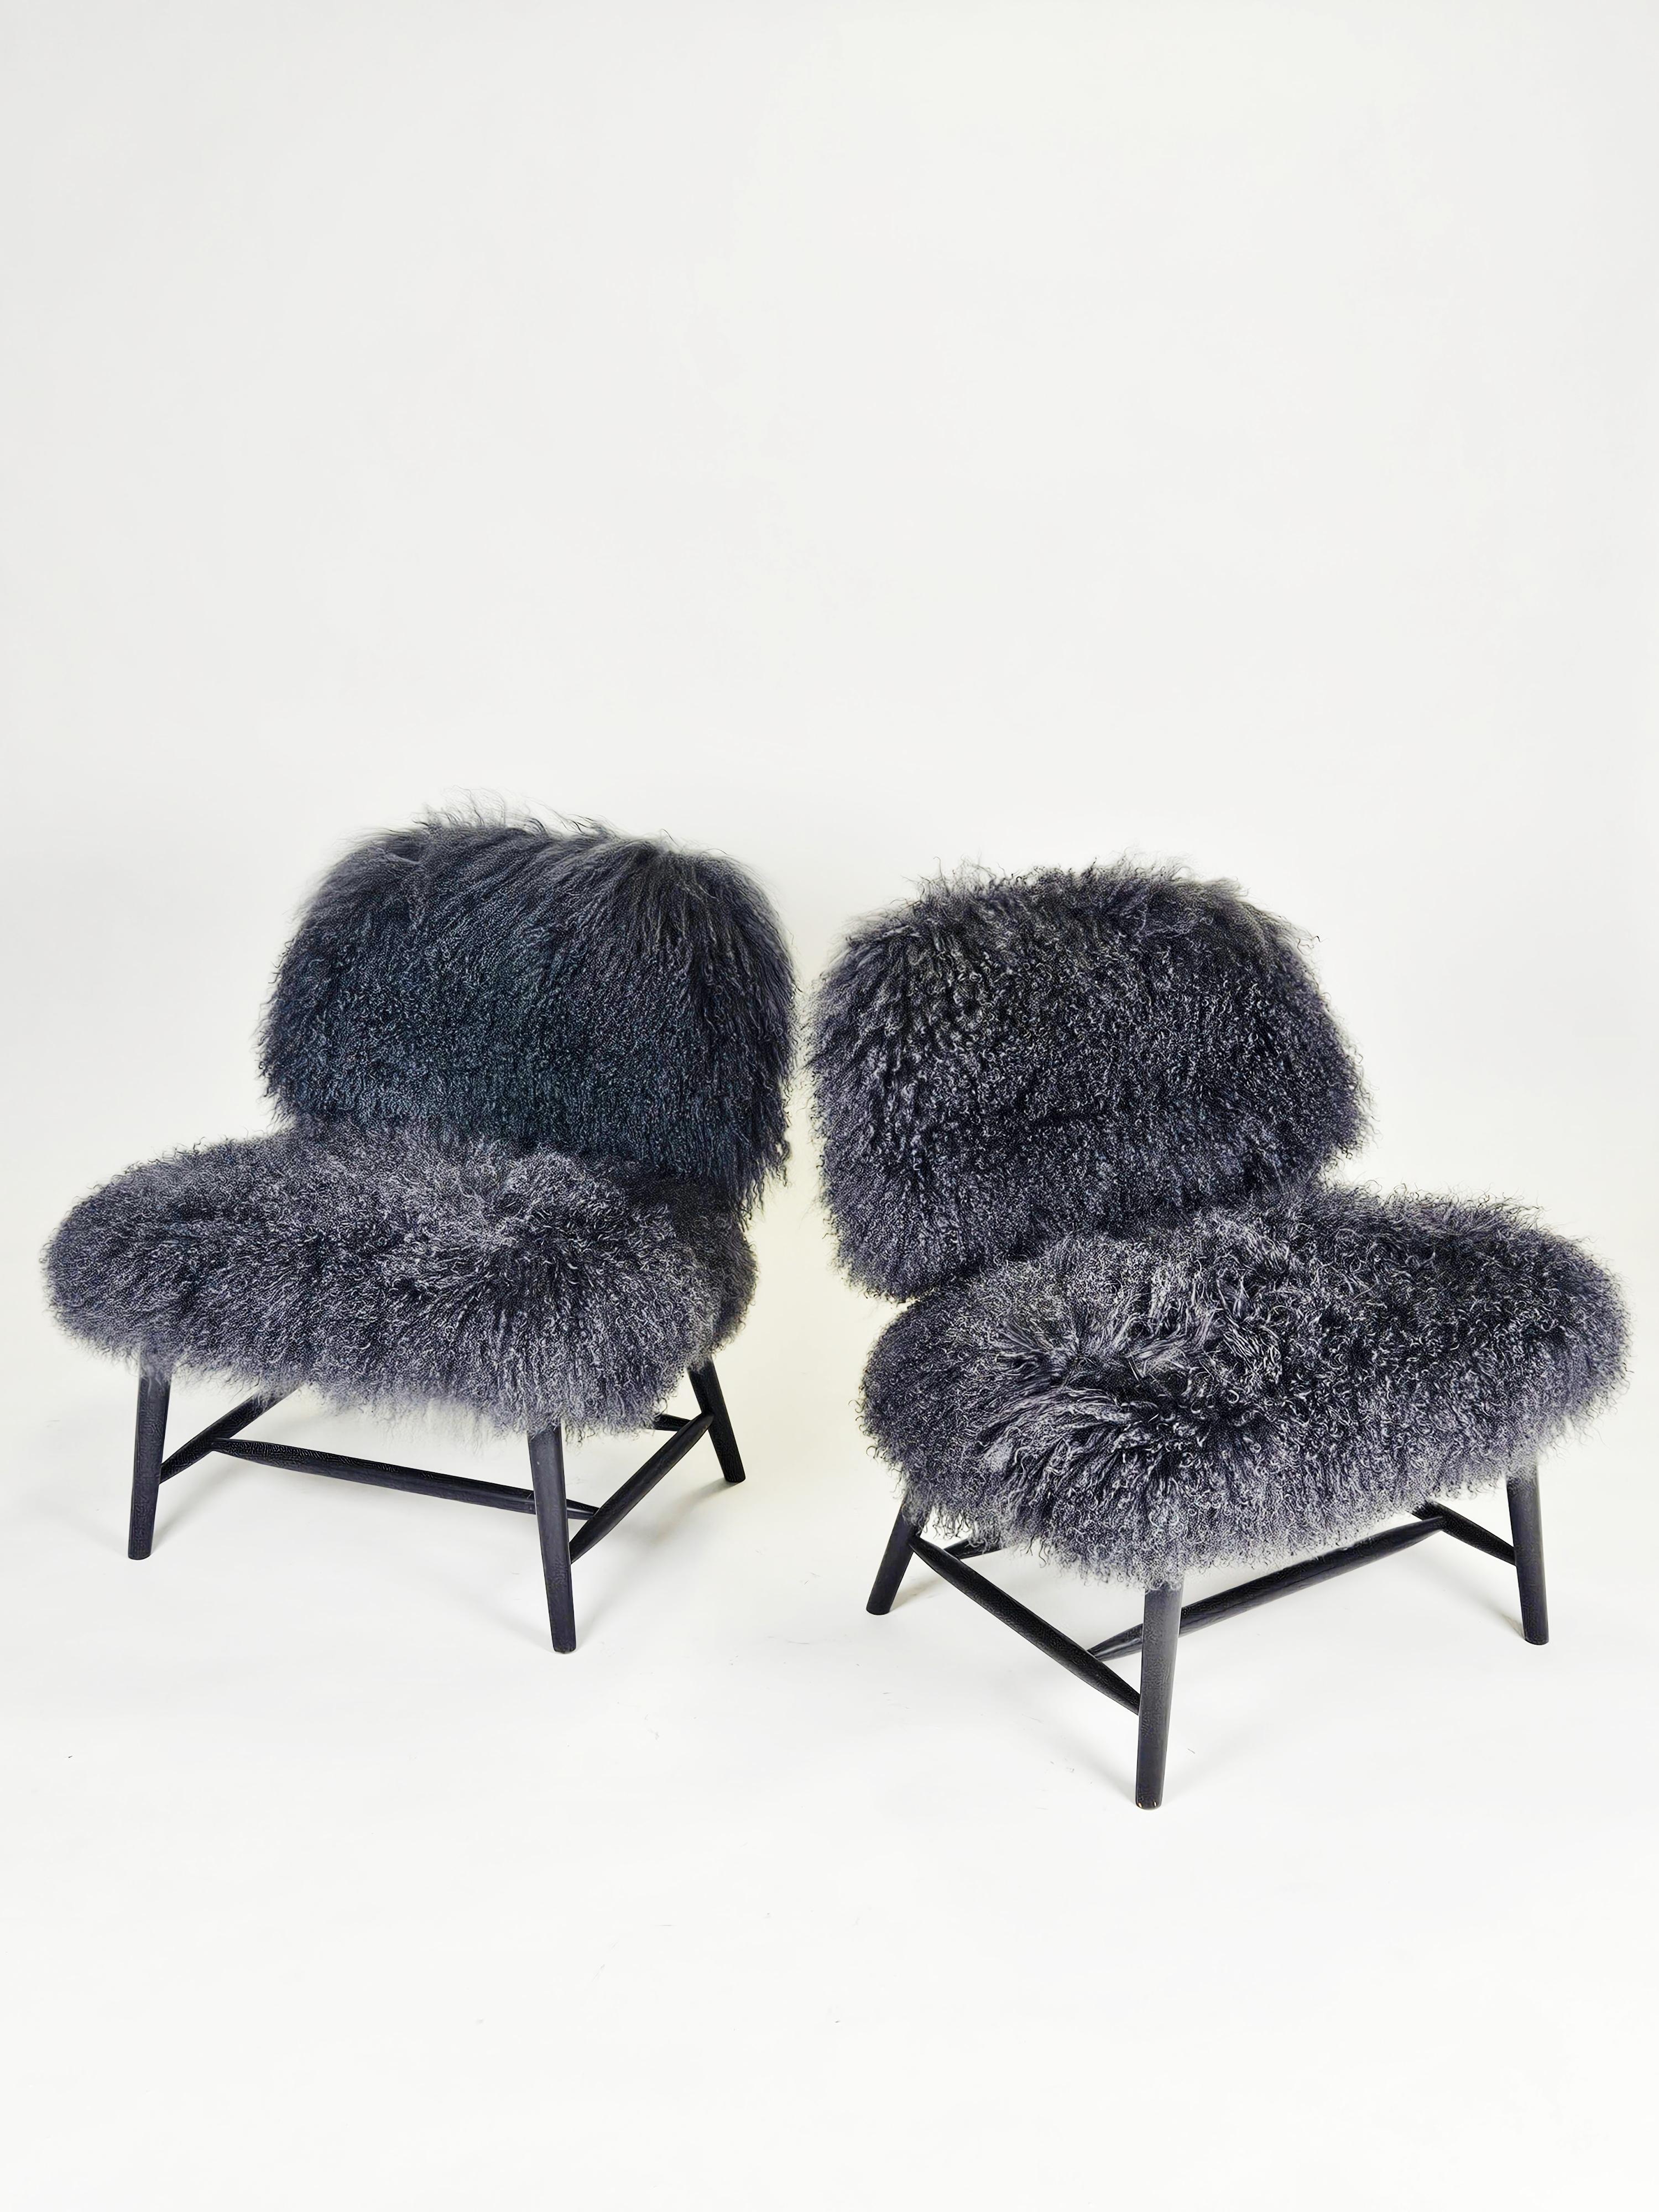 Ein Paar Sessel, entworfen von Alf Svensson für Bra Bohag, Ljungs Industrier, Schweden, in den 1950er Jahren. 

Das Modell heißt 